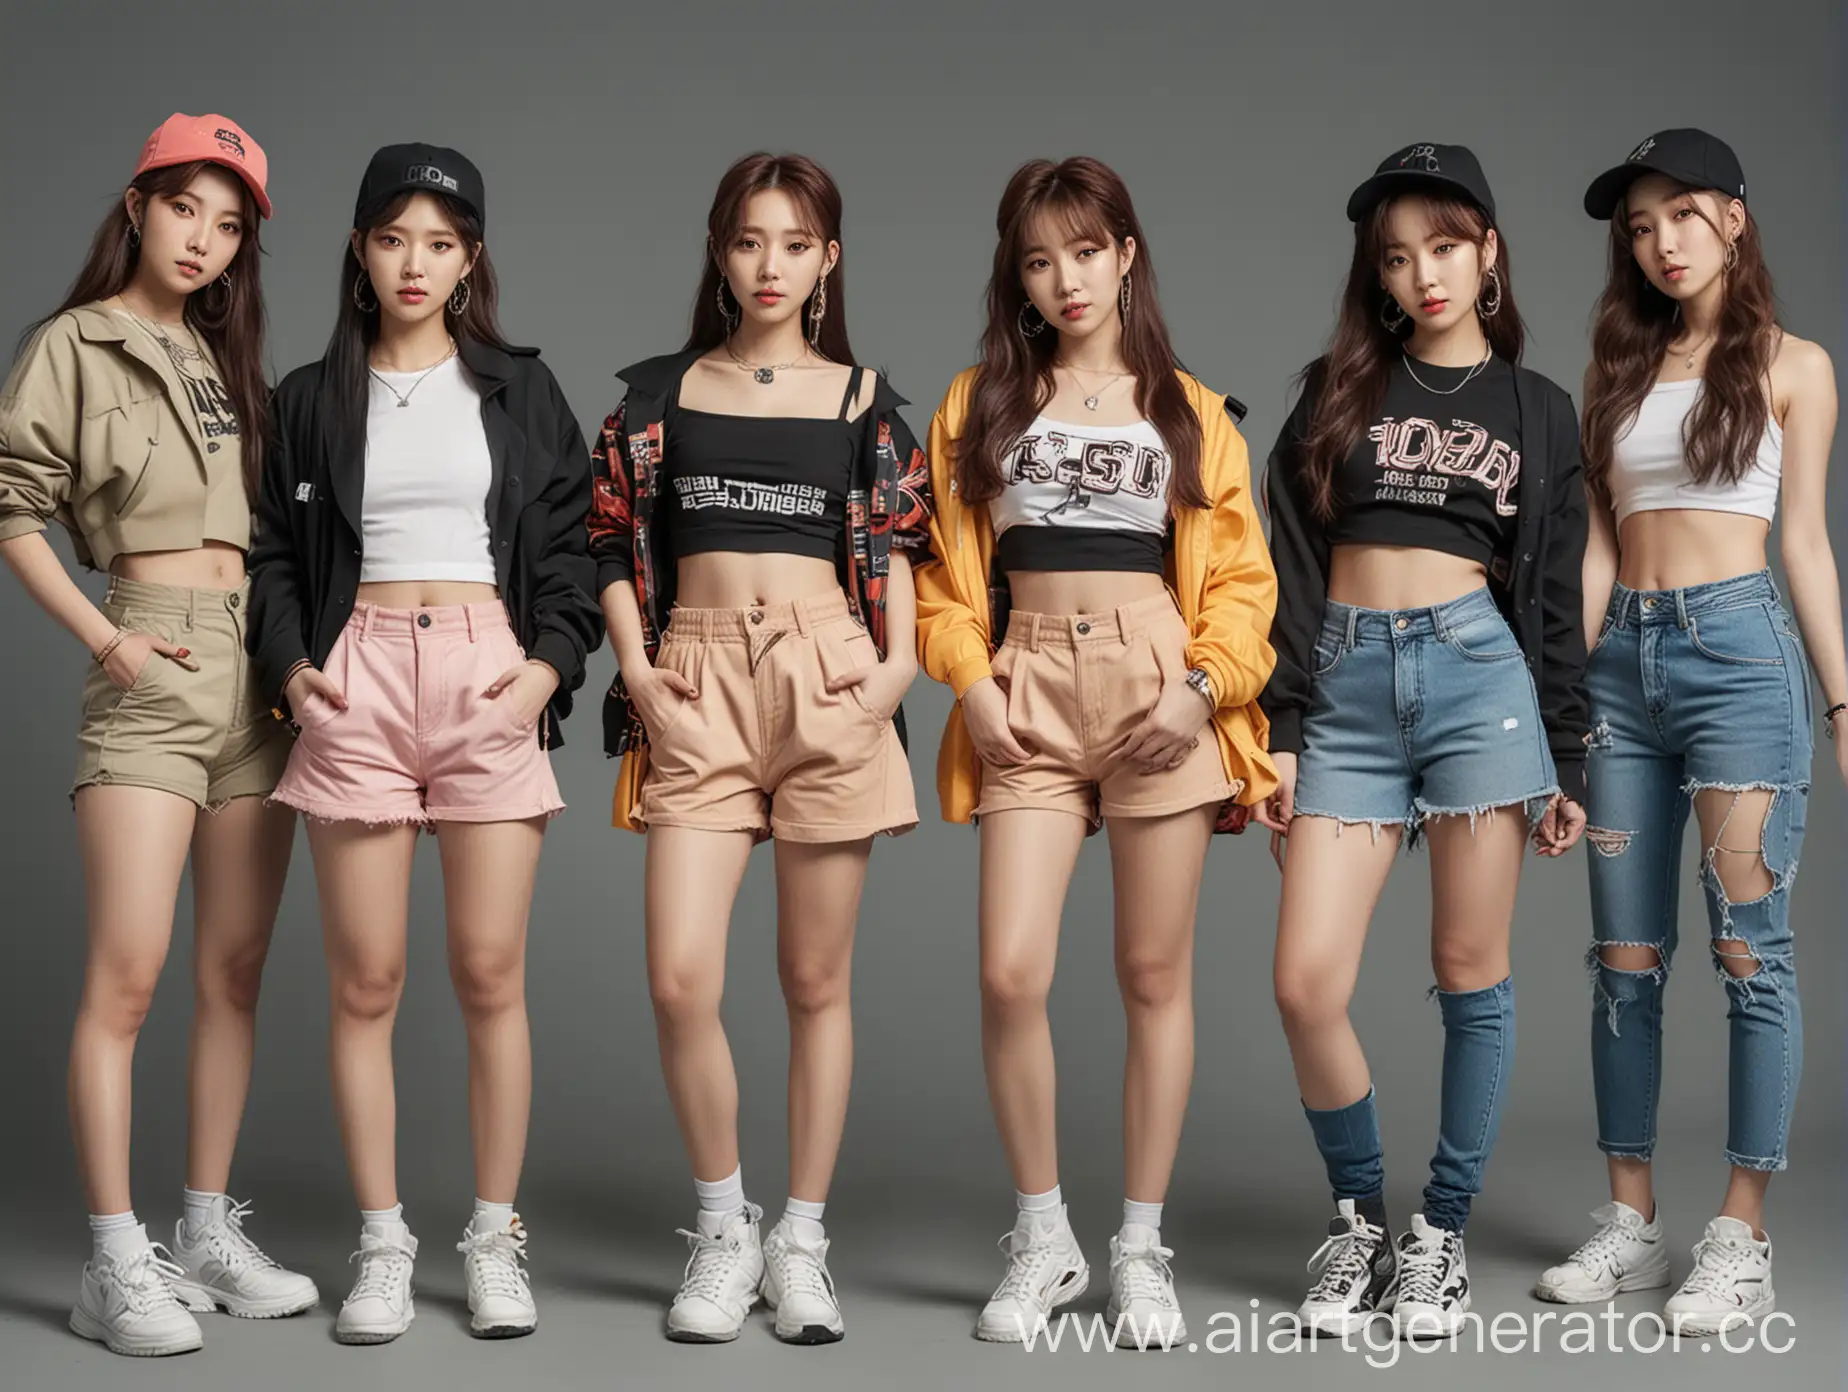 5 девушек корейской внешности в стиле k-pop, одеты в стиле hip-hop в полный рост